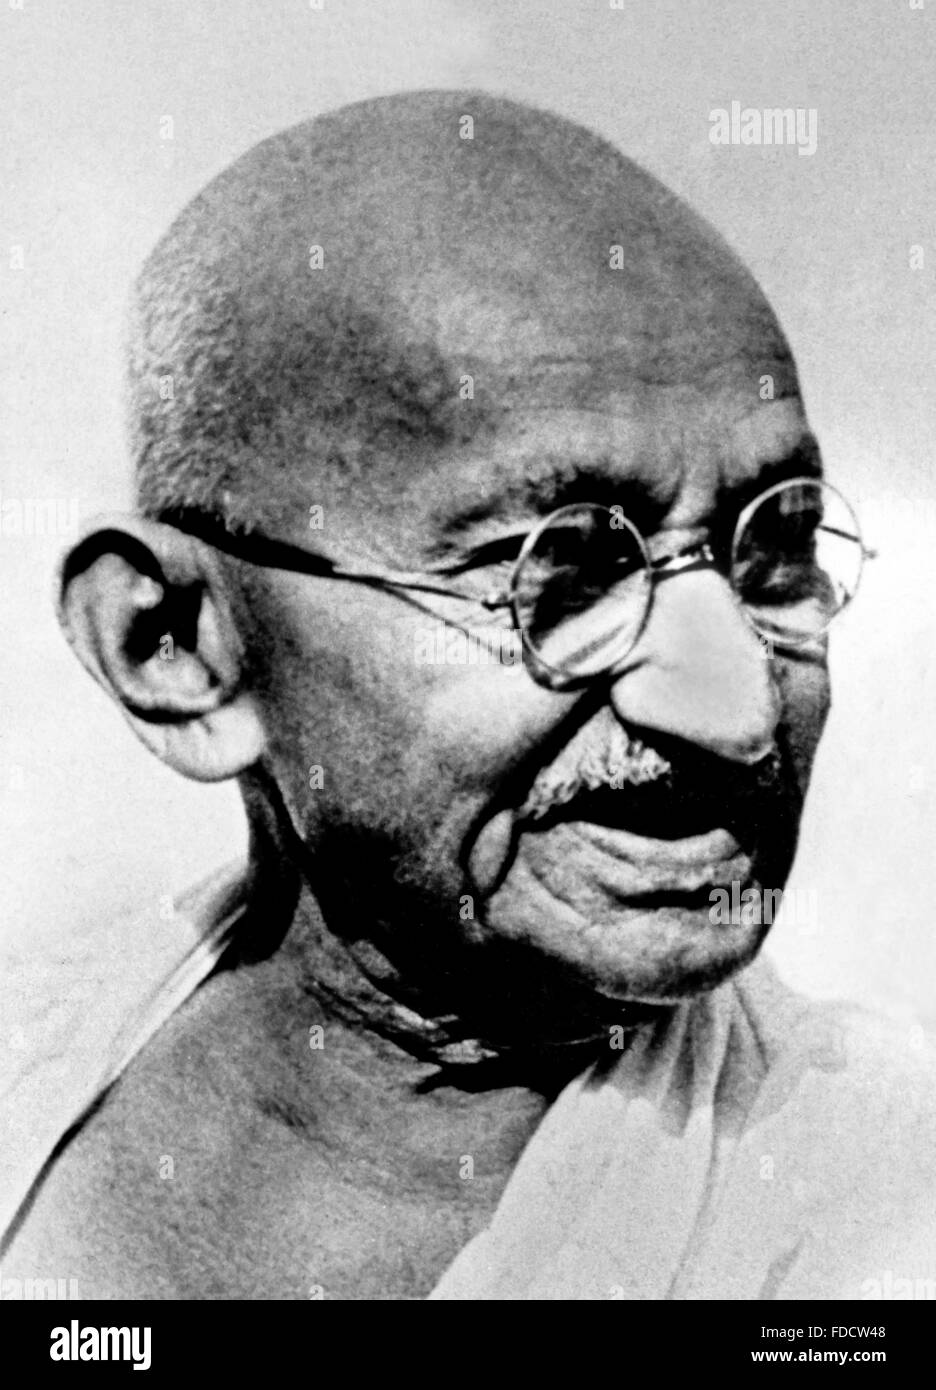 Mahatma Gandhi. Porträt von Mohandas Karamchand Gandhi, weithin bekannt als Mahatma Gandhi. Das Foto wurde wahrscheinlich Anfang 1940s aufgenommen Stockfoto